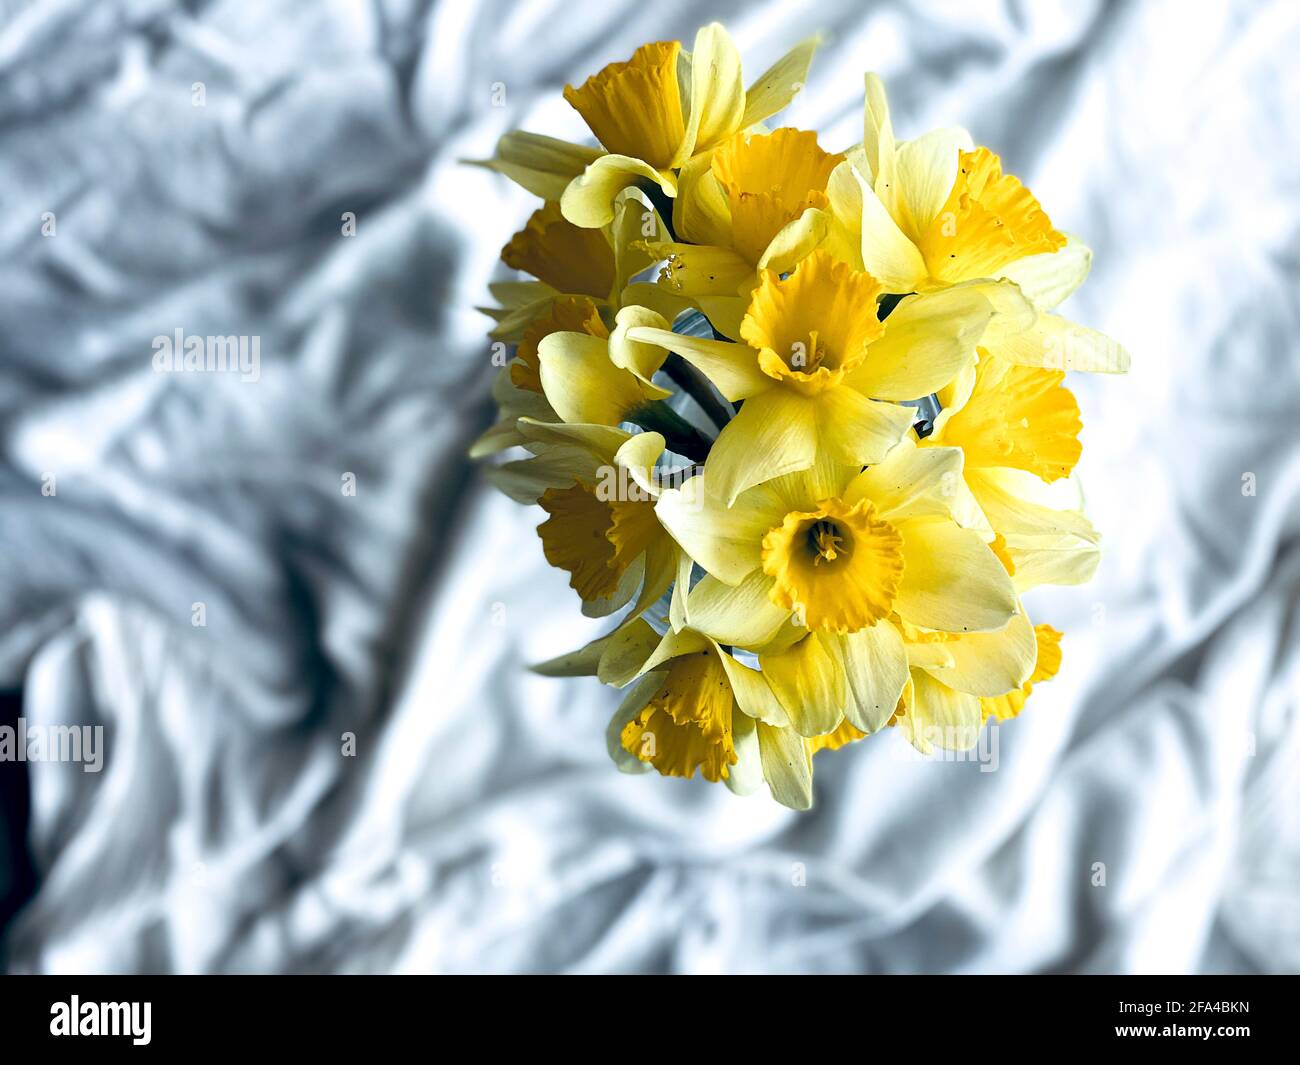 jonquilles jaunes dans un vase sur fond blanc, espace libre, vue de dessus Banque D'Images